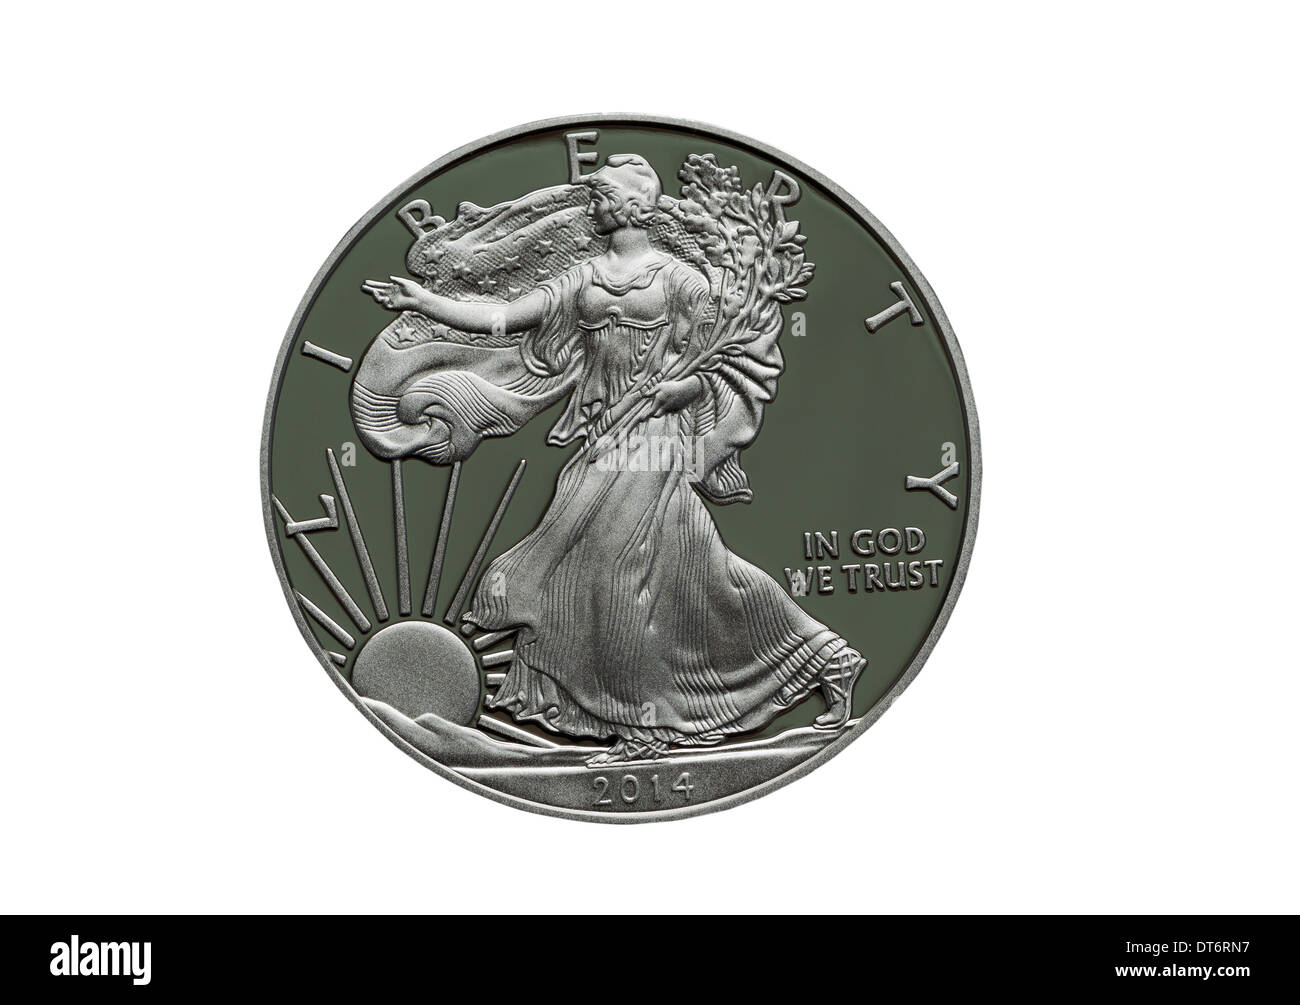 Photo des Etats-Unis d'Amérique La preuve Mint 2014 Silver Dollar isolé sur fond blanc Banque D'Images